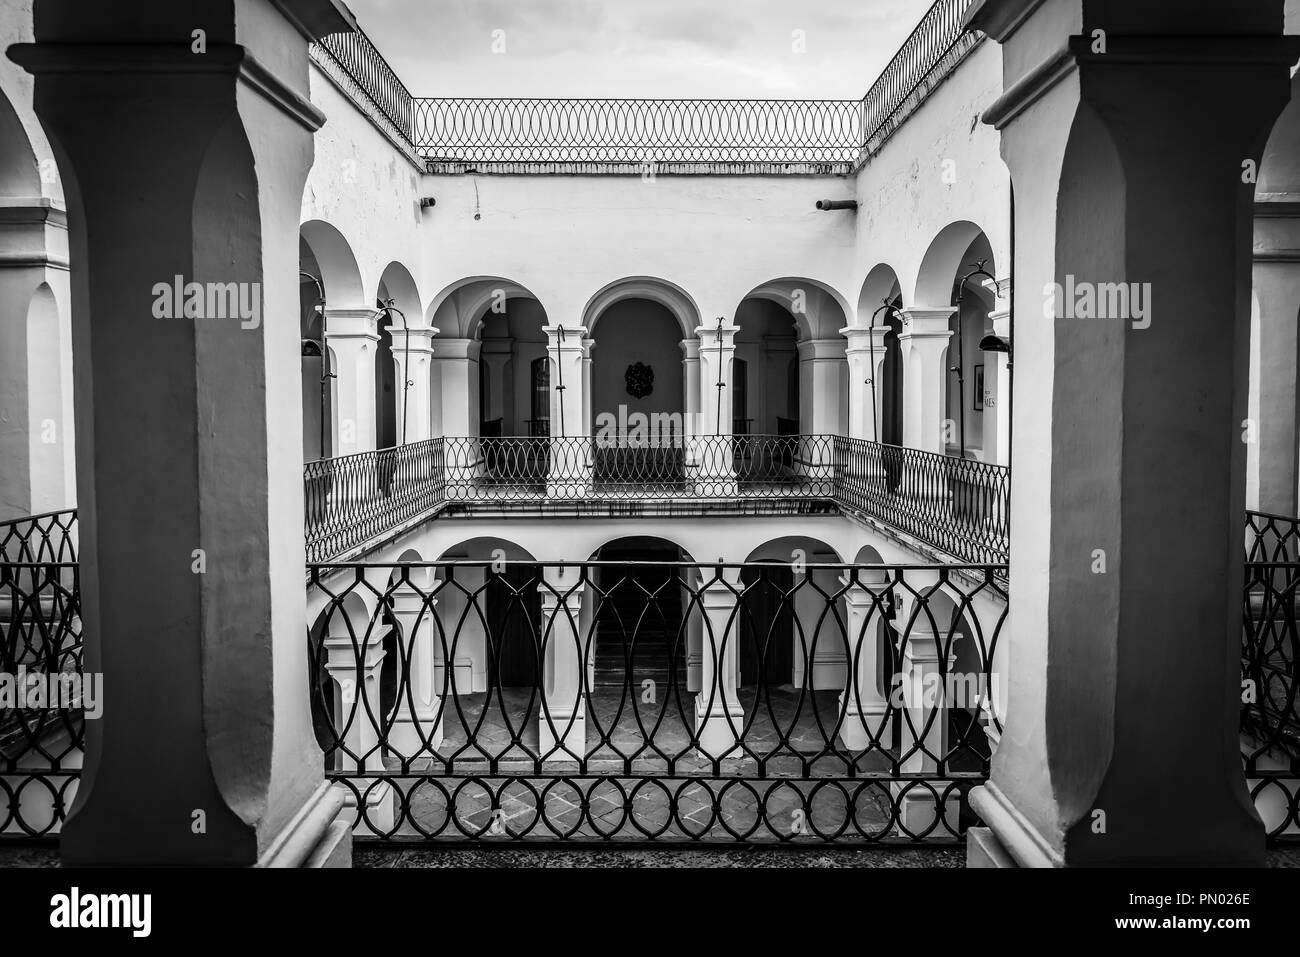 L'architecture coloniale espagnole, musée de peintres d'Oaxaca, Oaxaca, Mexique Banque D'Images